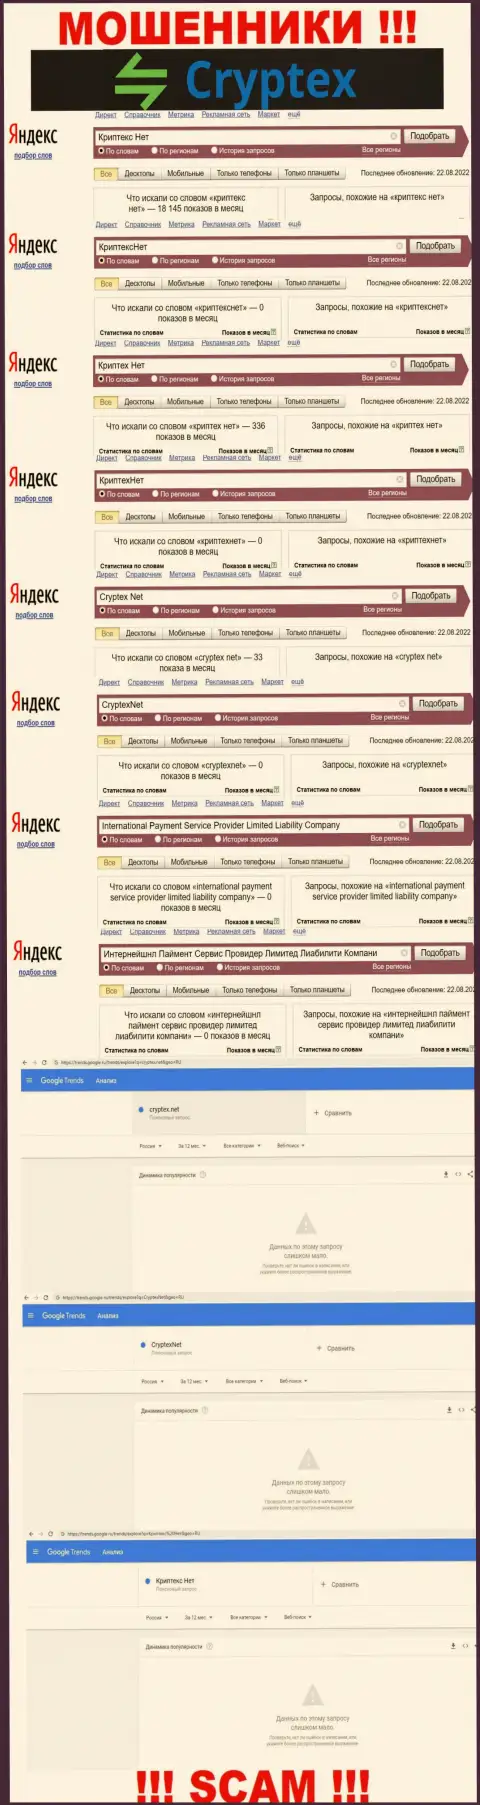 Скрин результата поисковых запросов по неправомерно действующей организации Интернейшнл Паймент Сервис Провидер Лимитед Лиабилити Компани